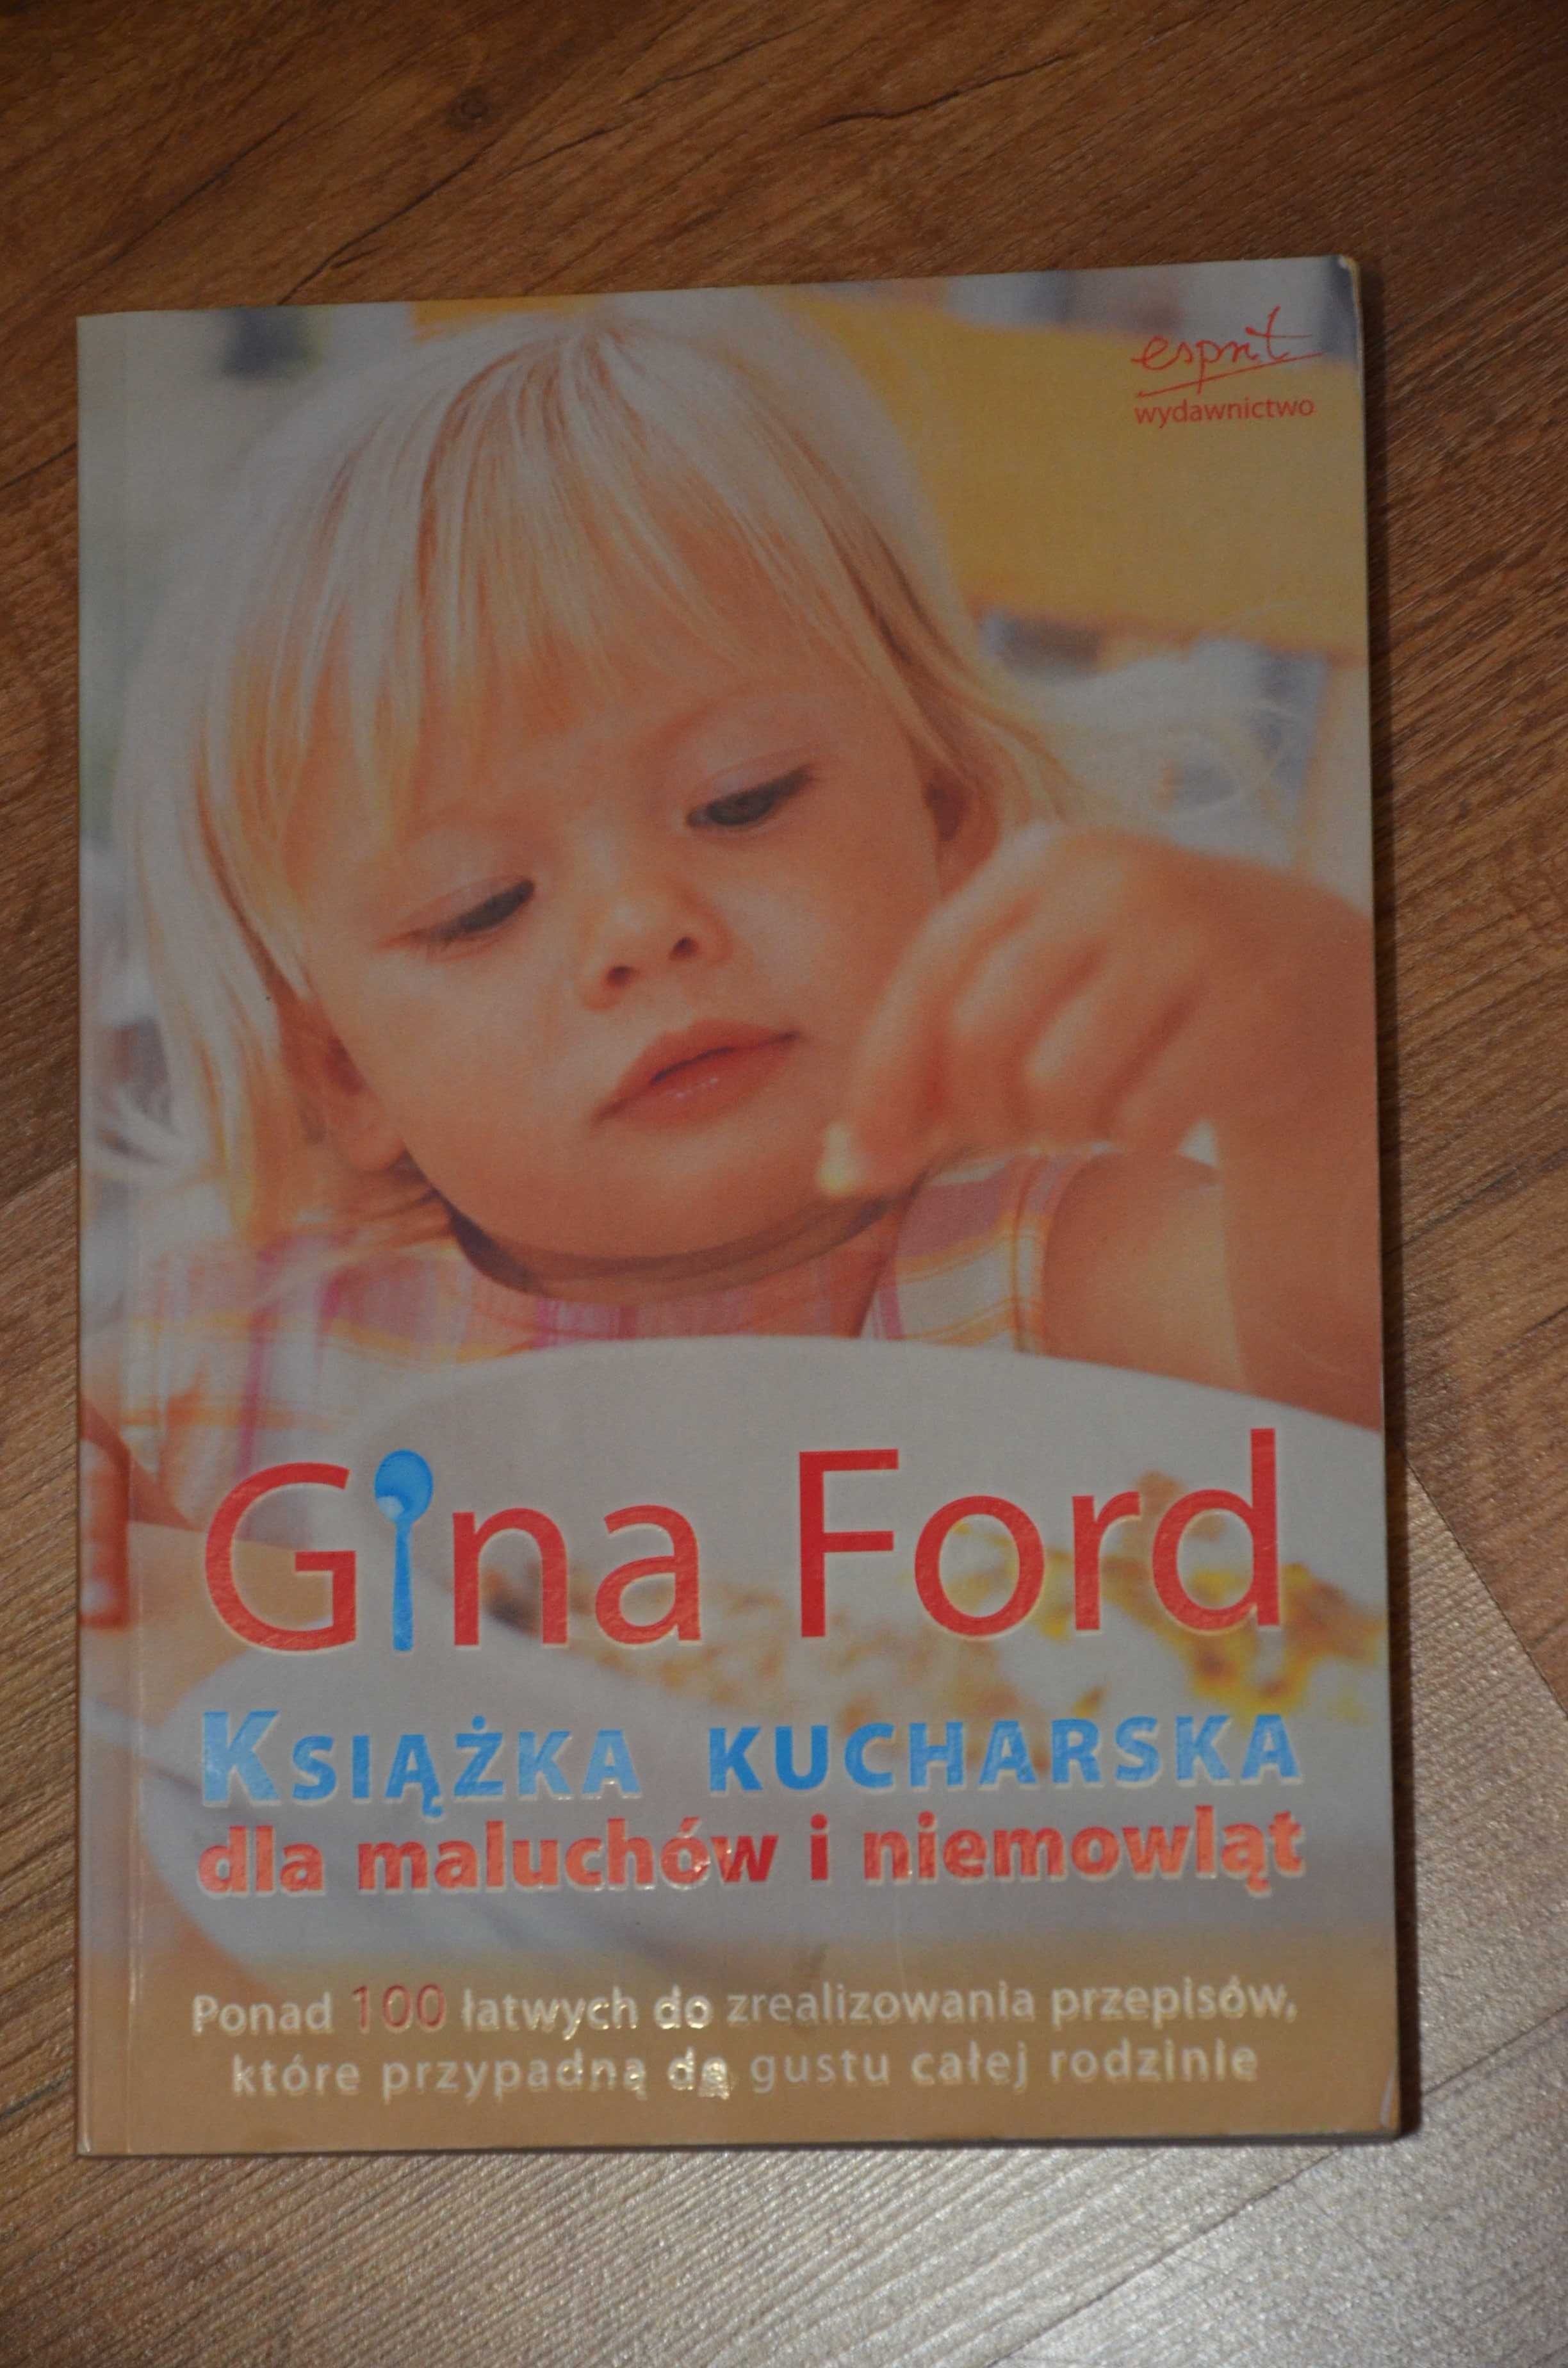 Książka kucharska dla maluchów i niemowląt. Gina Ford. Wyd.Espirit